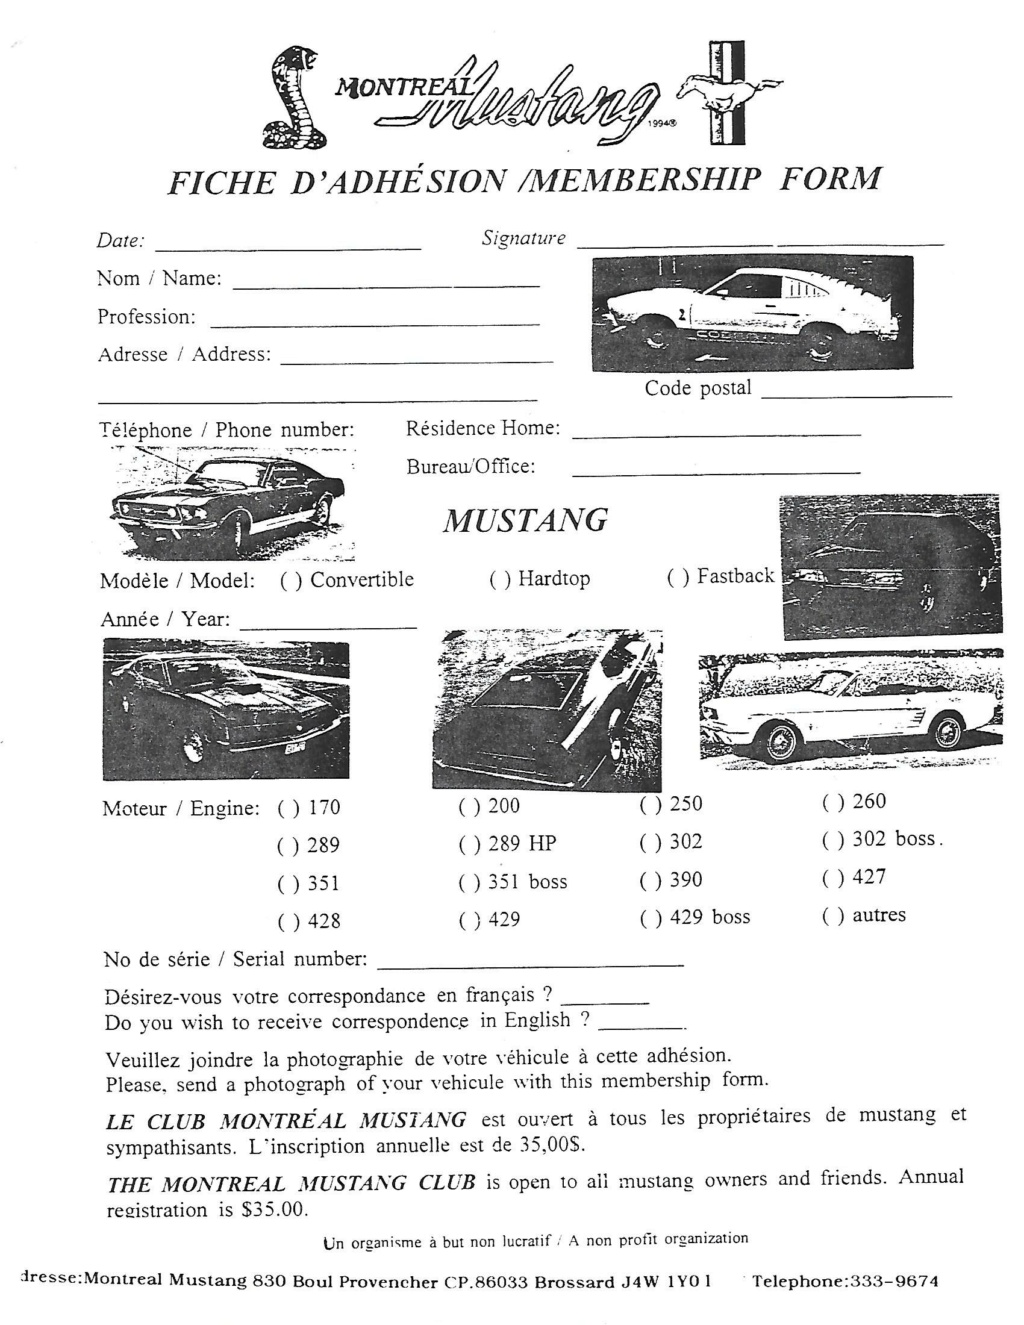 Montréal Mustang dans le temps! 1981 à aujourd'hui (Histoire en photos) - Page 8 1997-012